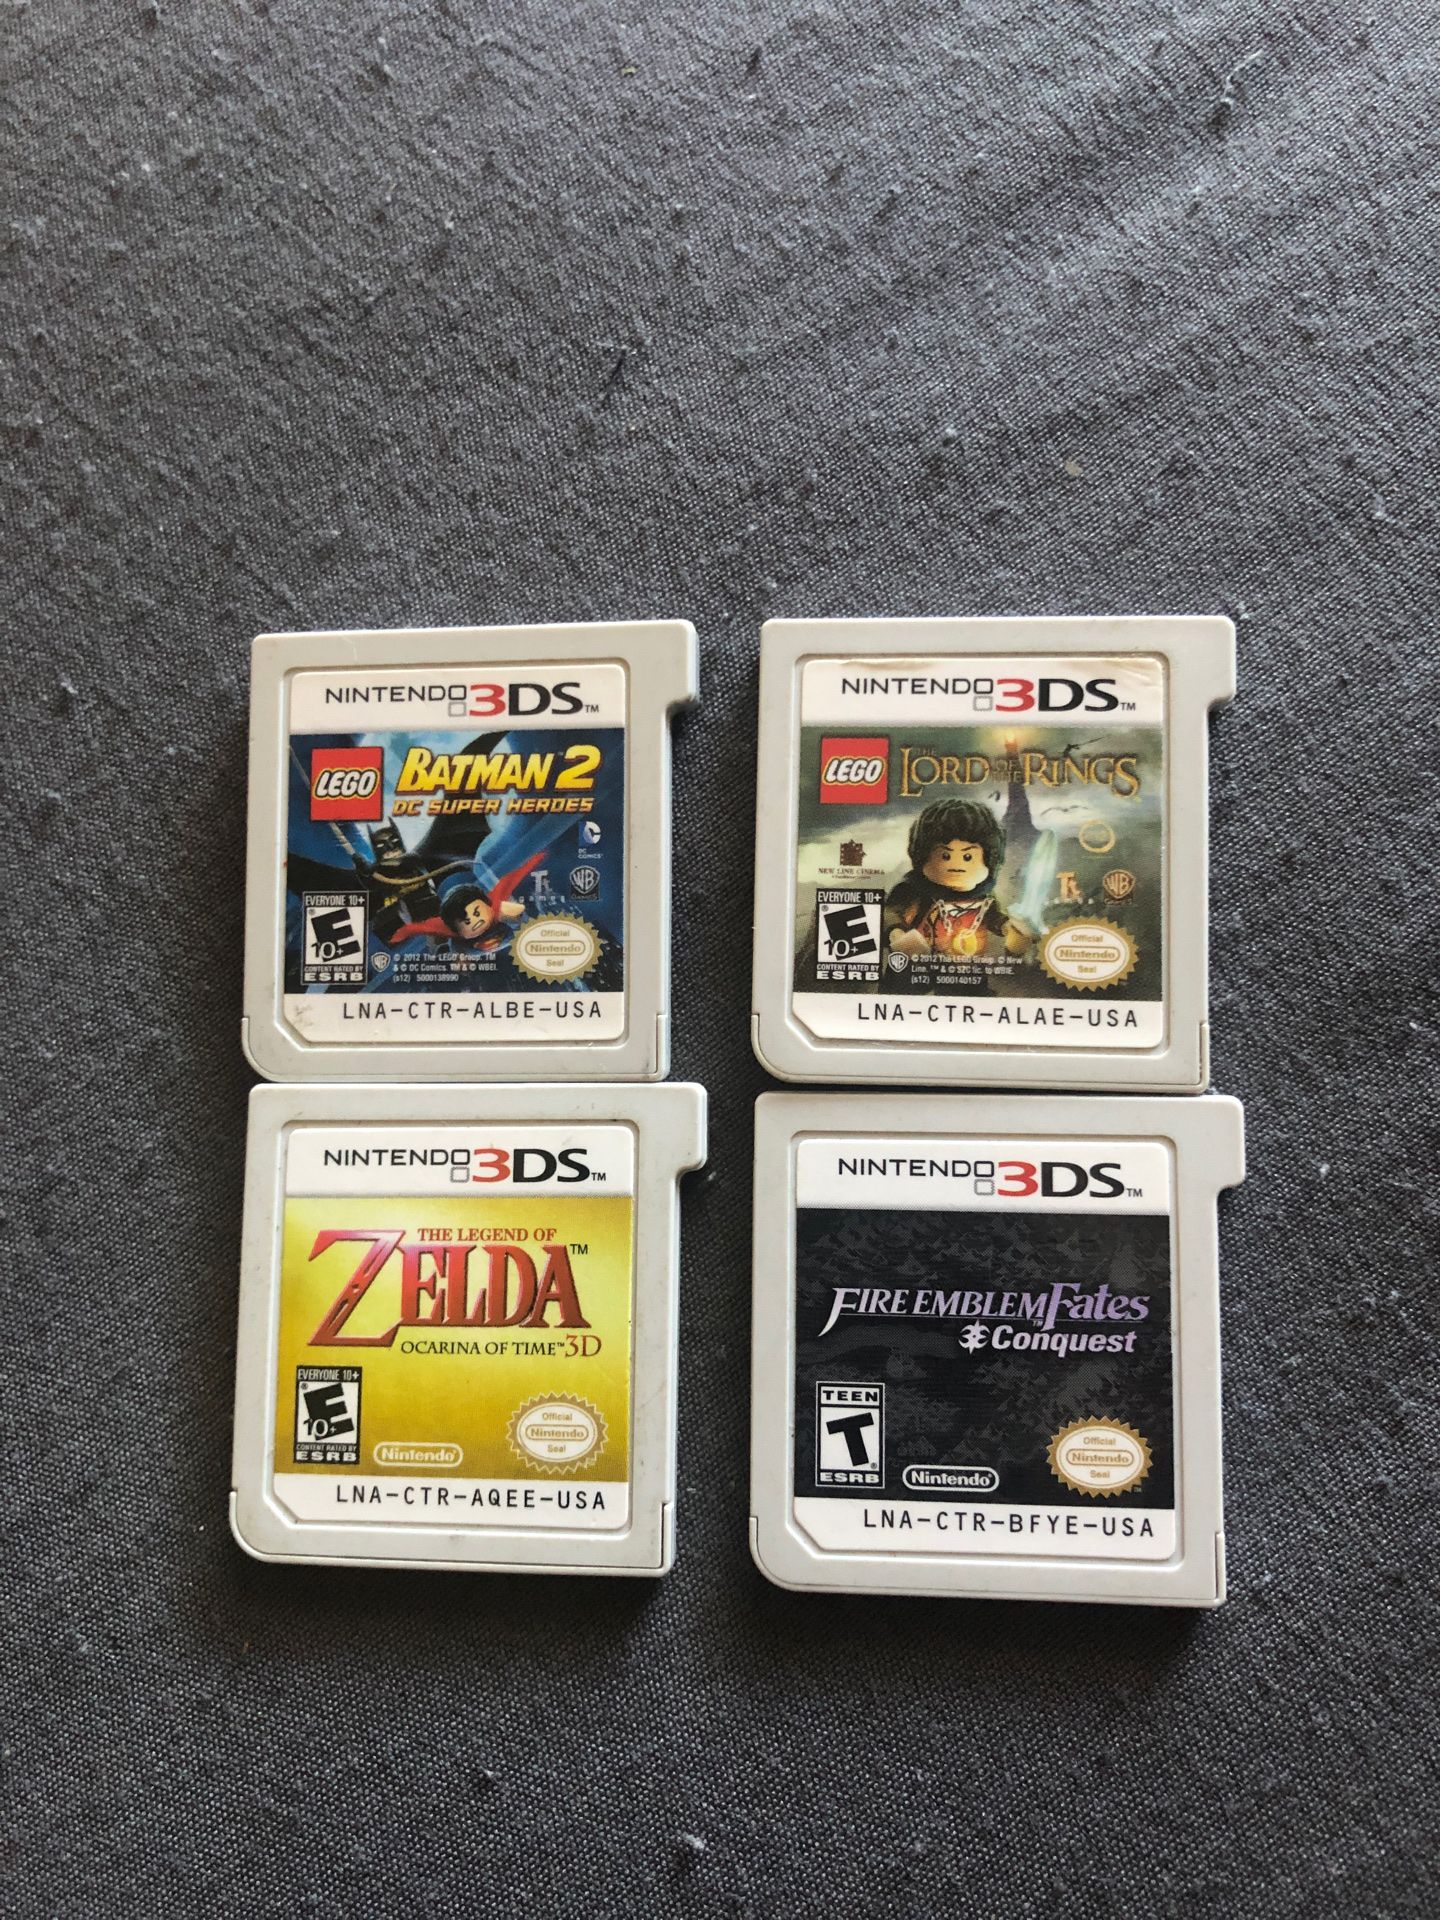 Nintendo 3DS games